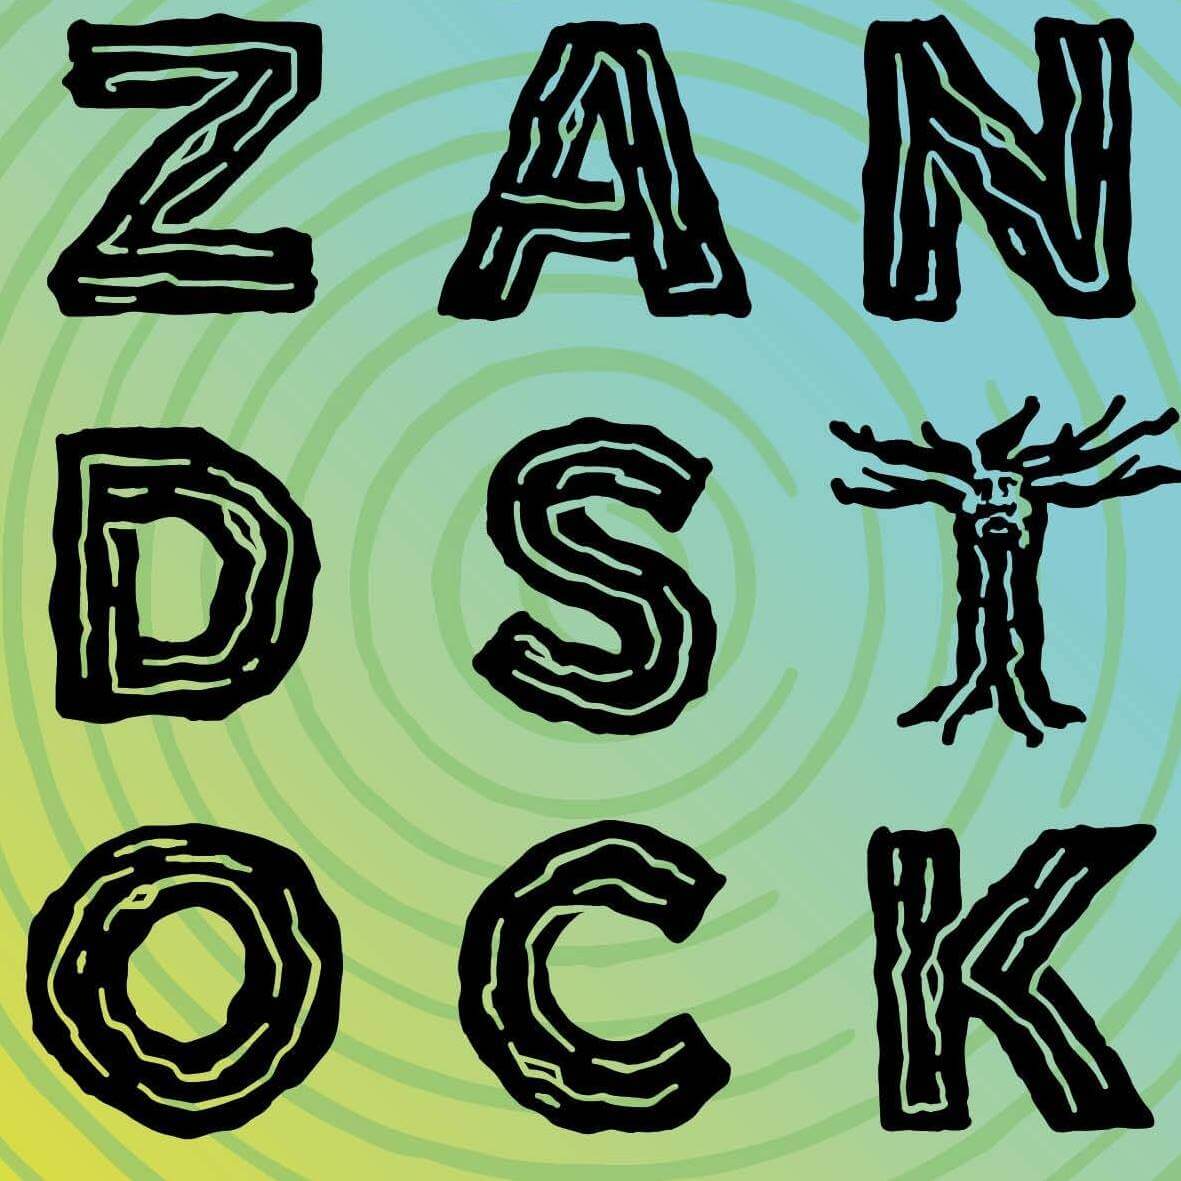 Zandstock, Festival, 't Zand